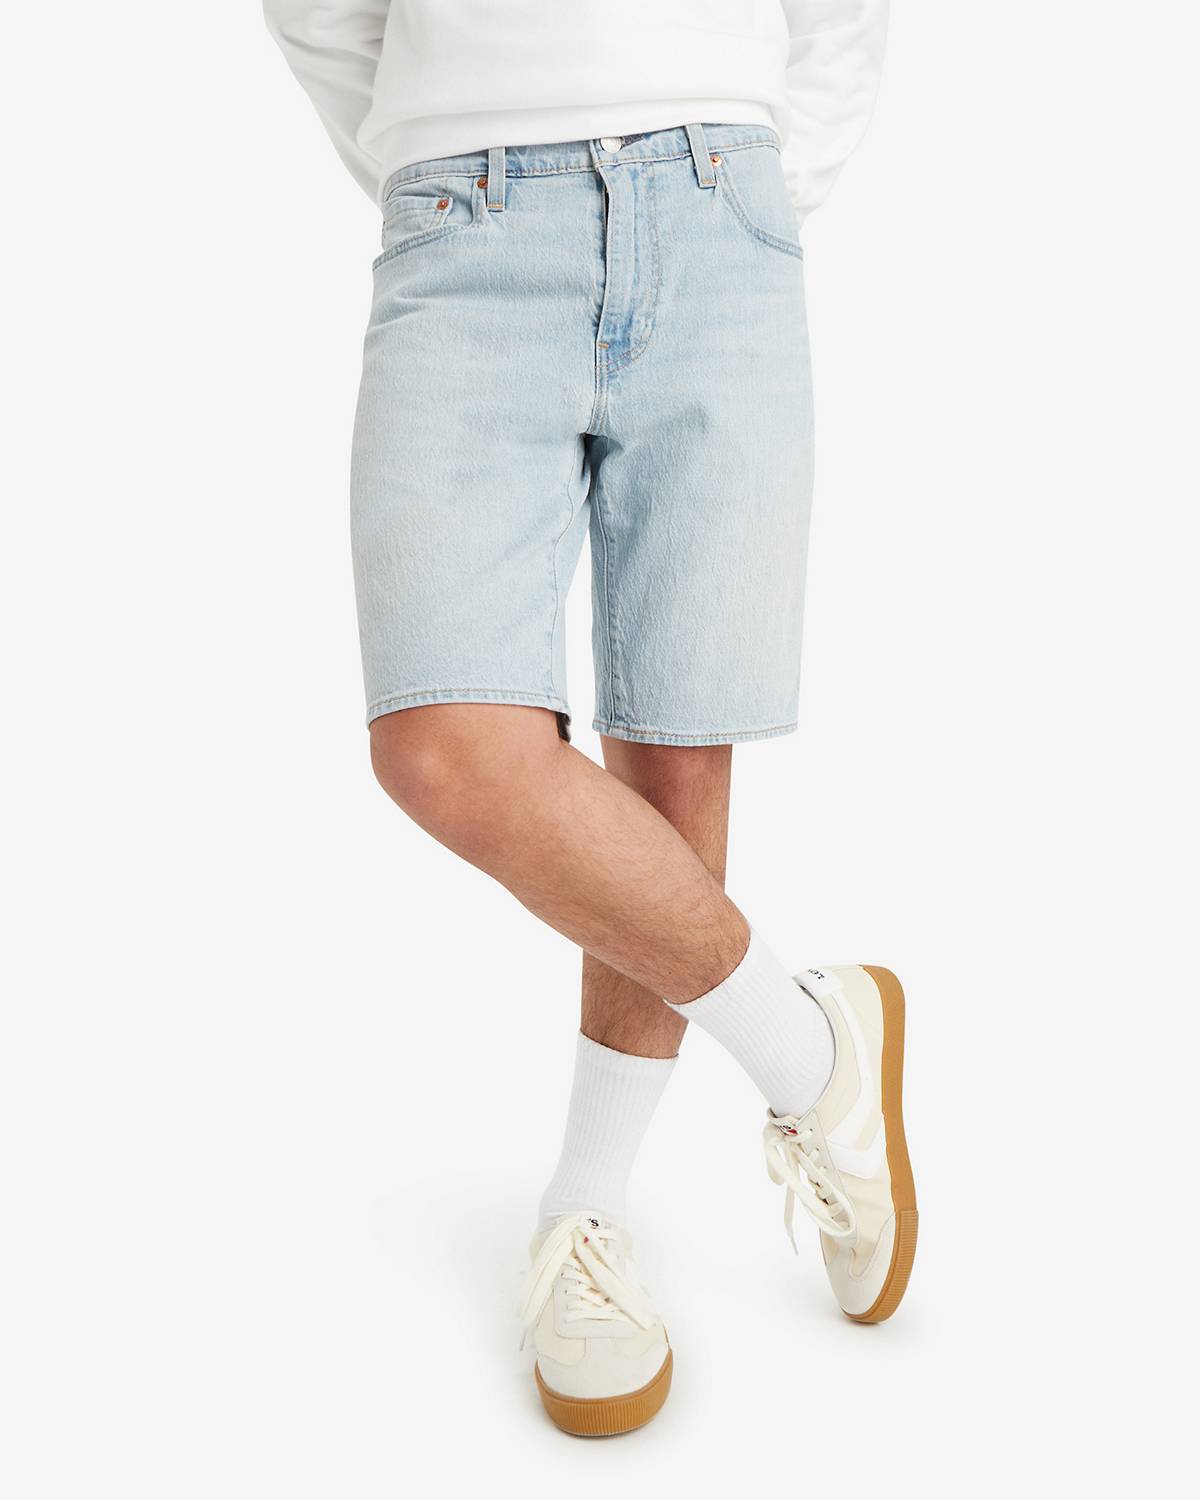 Half Pants for men, Best affordable Shorts for Men